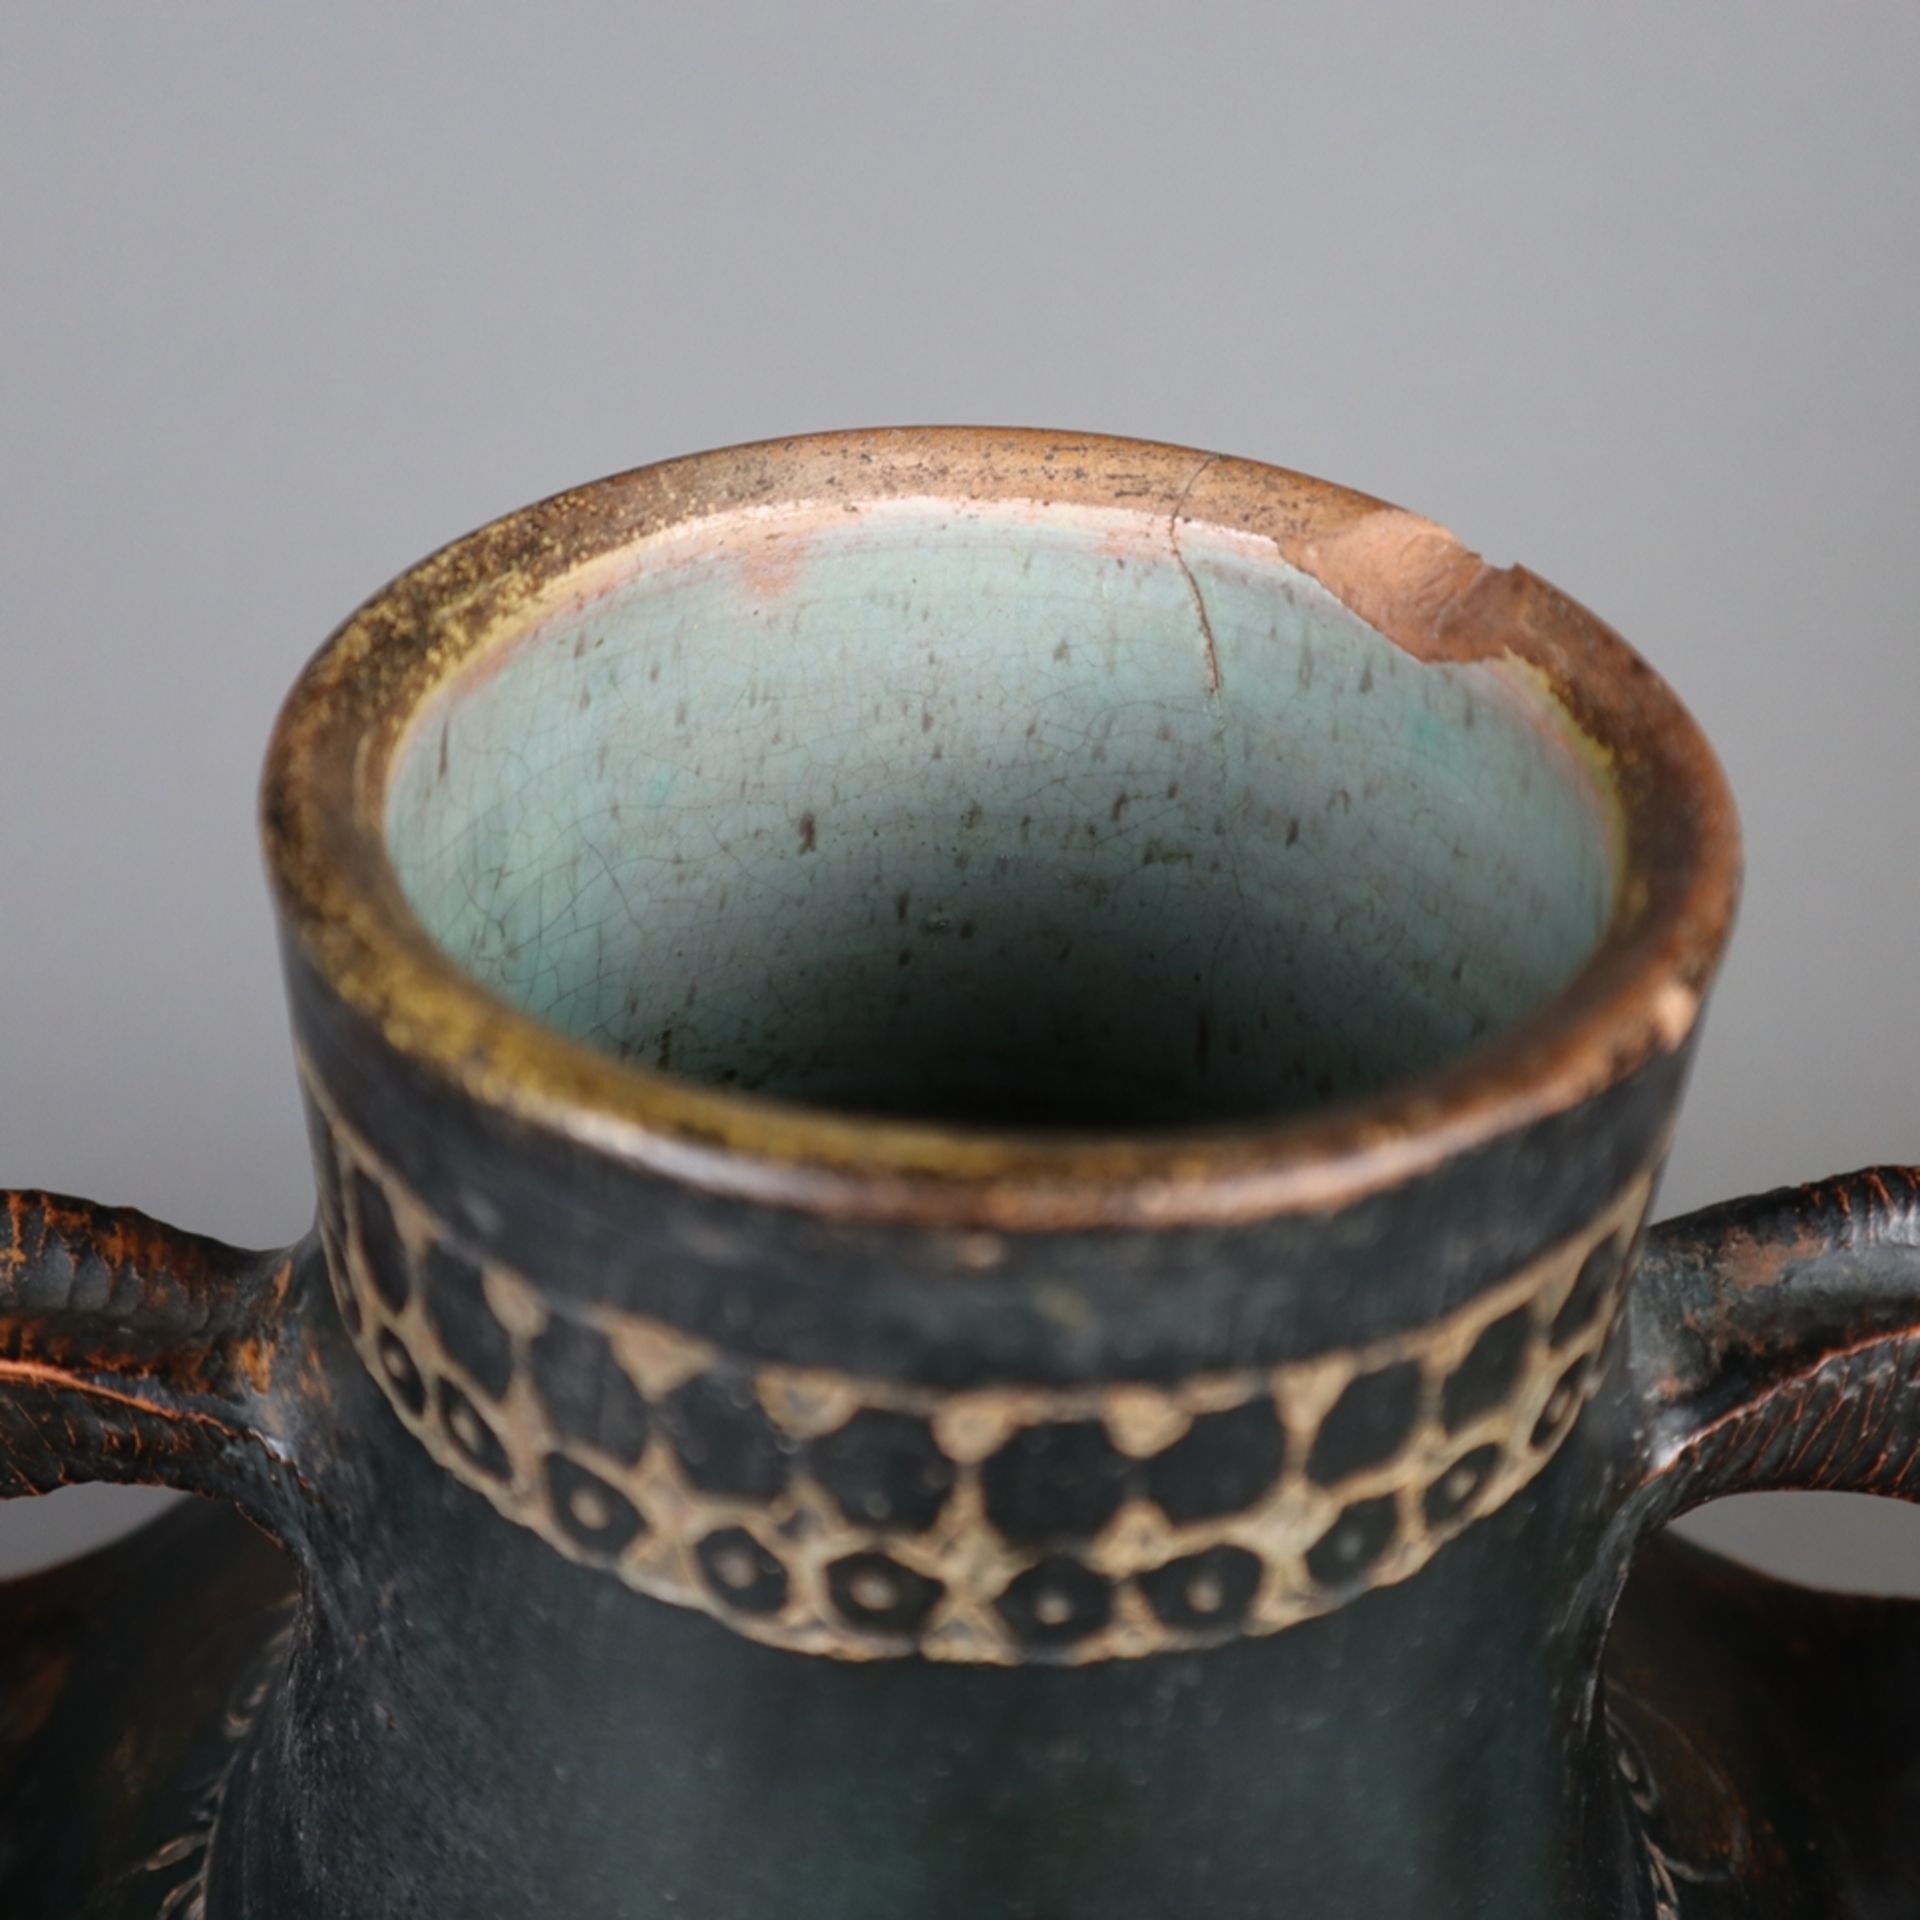 Doppelhenkel-Vase - wohl Balkan, 19.Jh. oder älter, Ton, braun glasiert, umlaufend Ornamentborte, s - Bild 2 aus 9